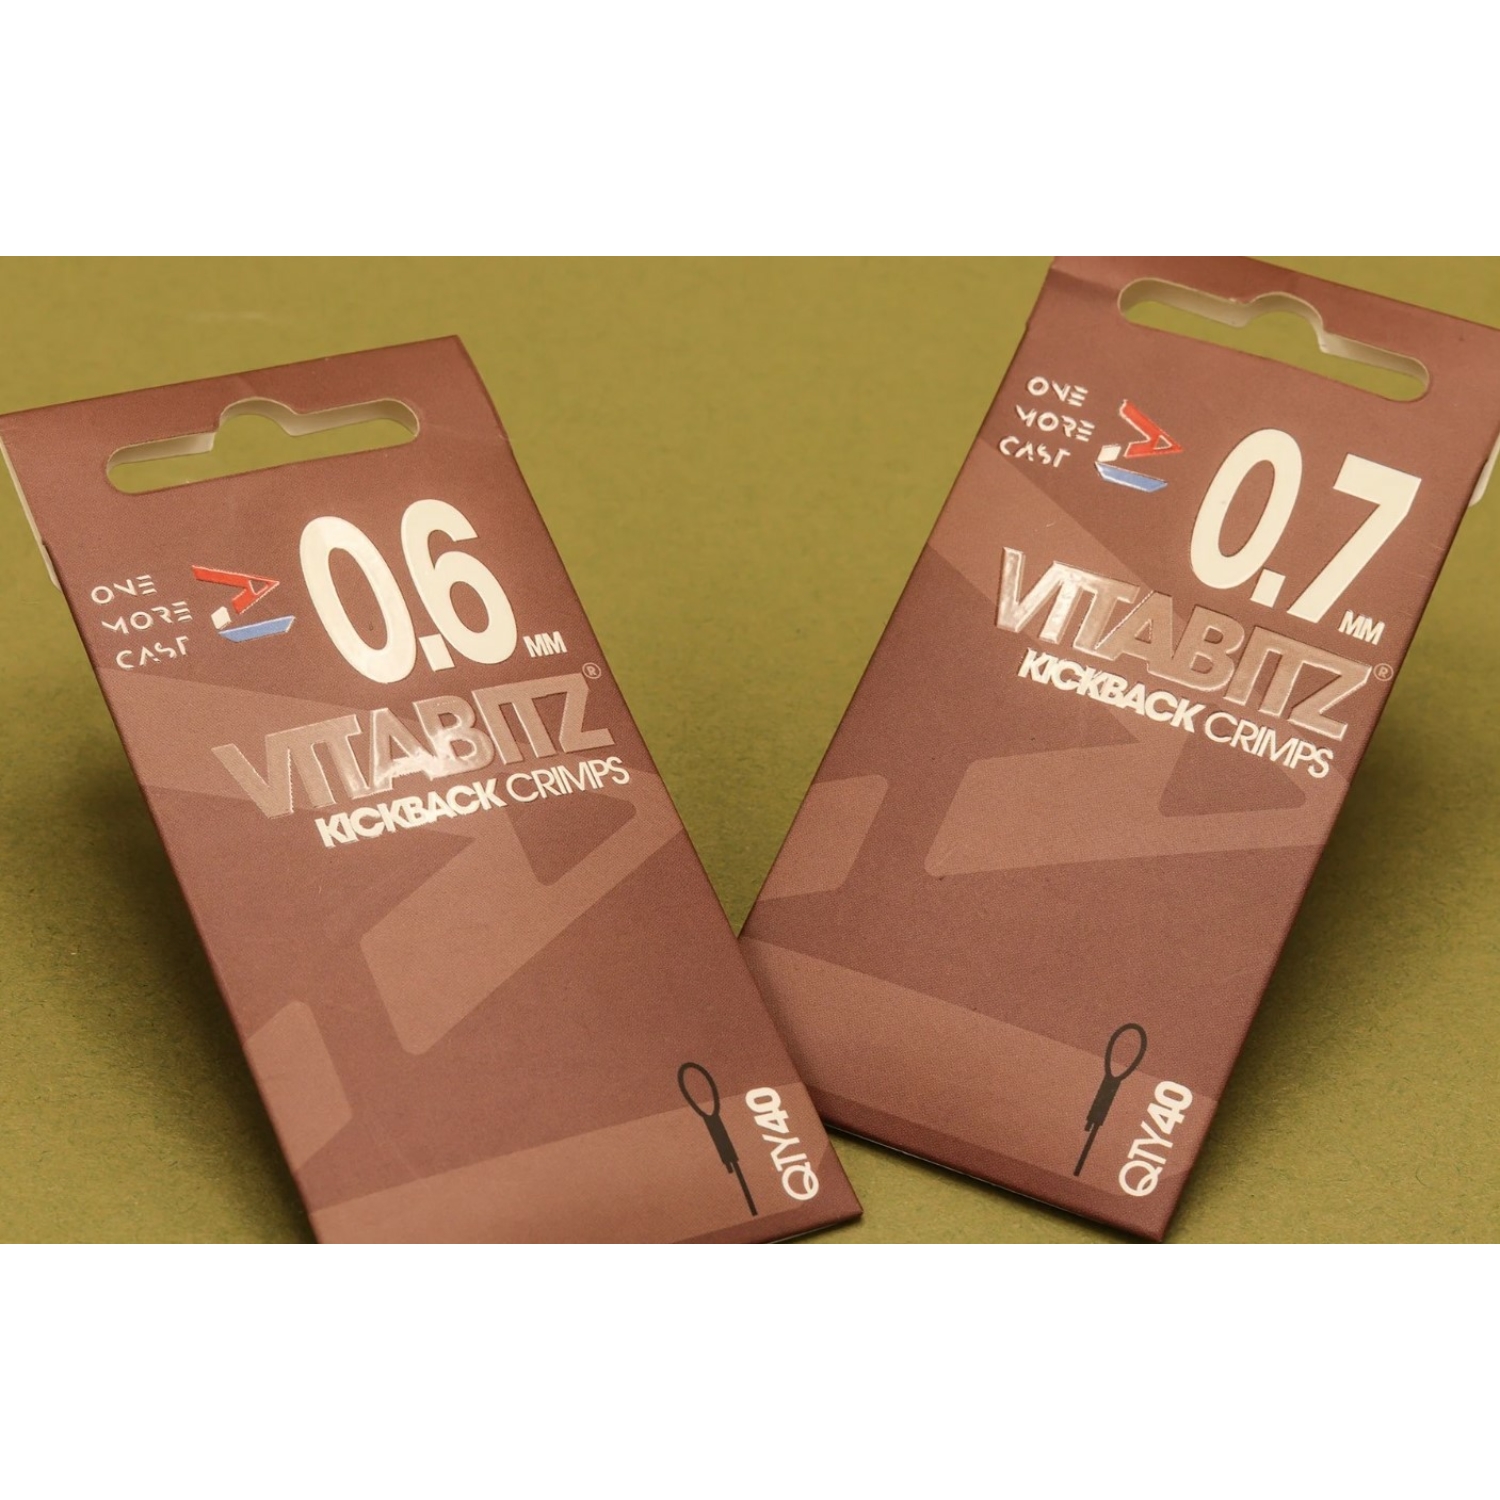 Vitabitz Crimps 0.7mm